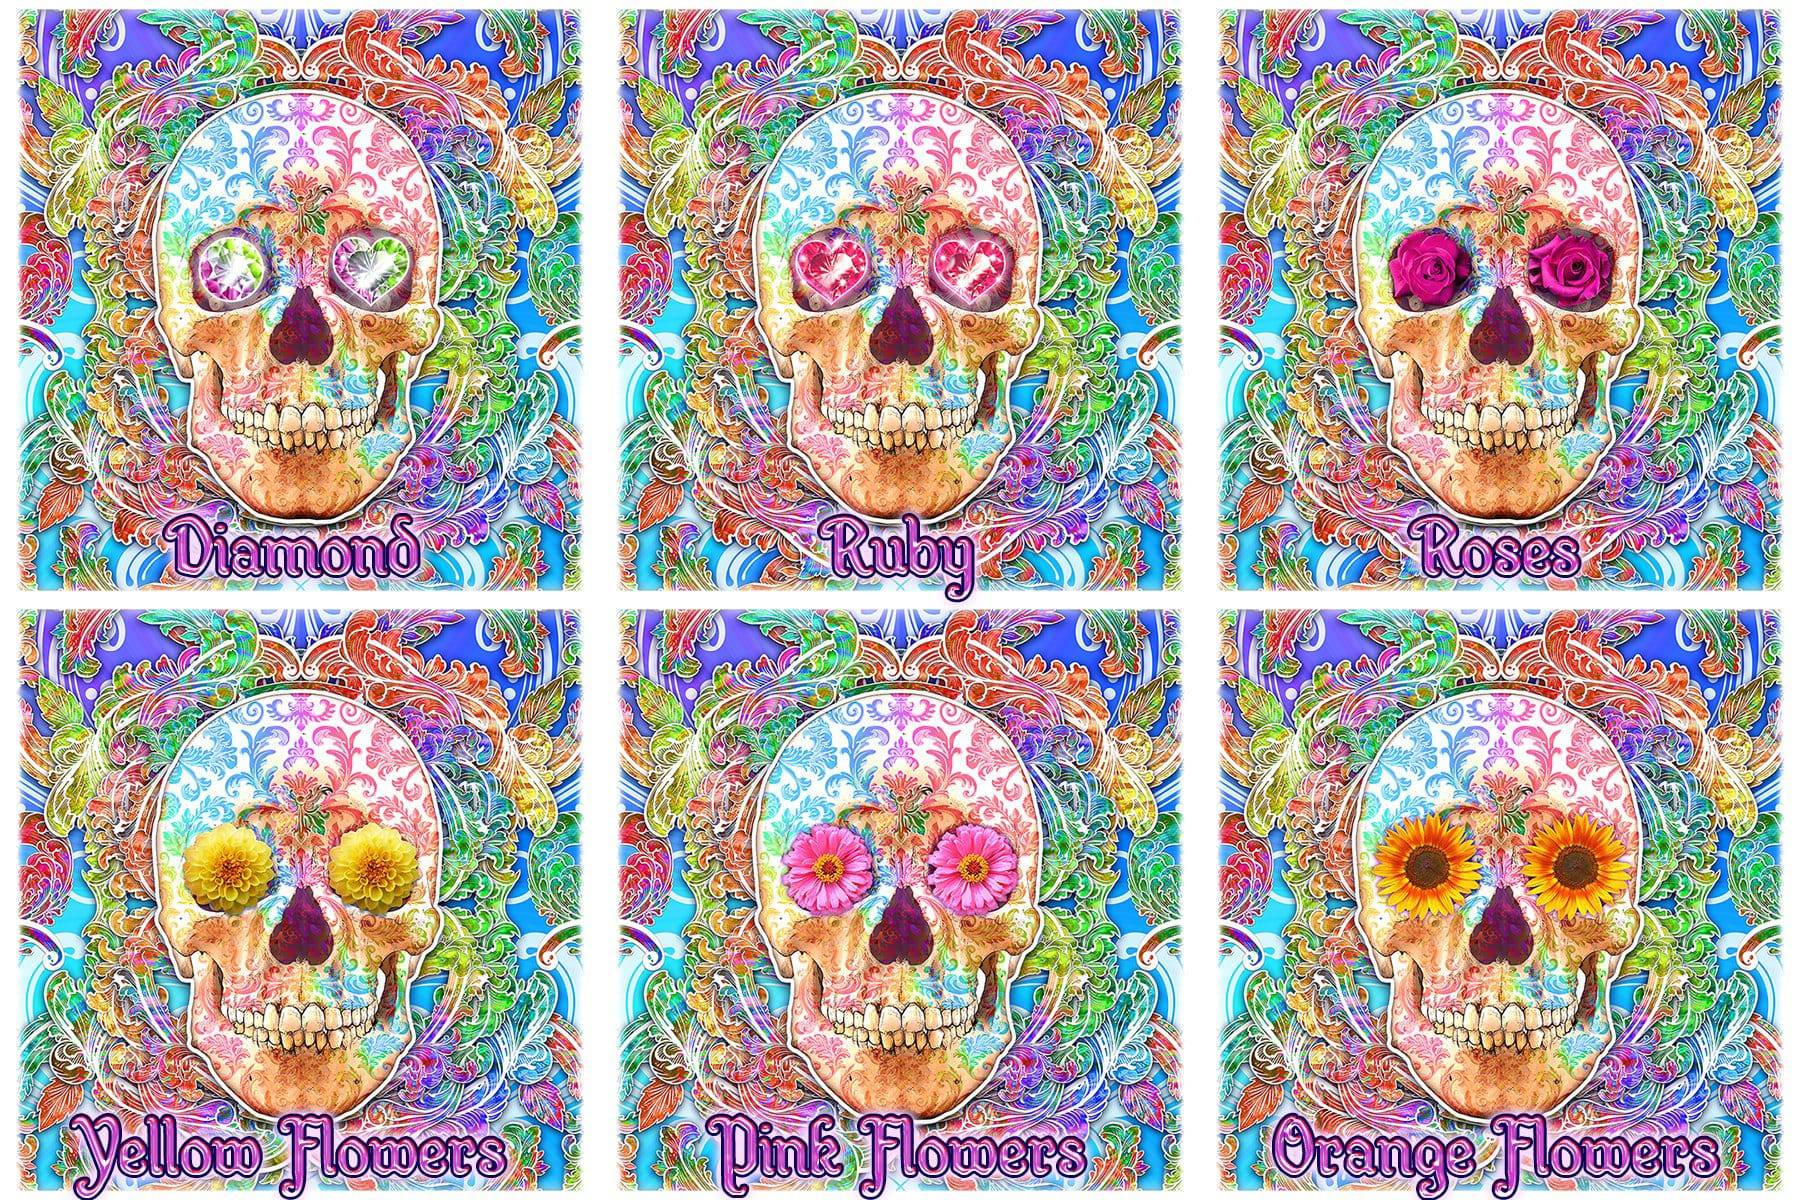 Sugar Skull Shower Curtain, Dia de los Muertos, Day of the Dead, Mexican Bathroom Decor, Festive, Macabre Decor - Psy Color - Abysm Internal